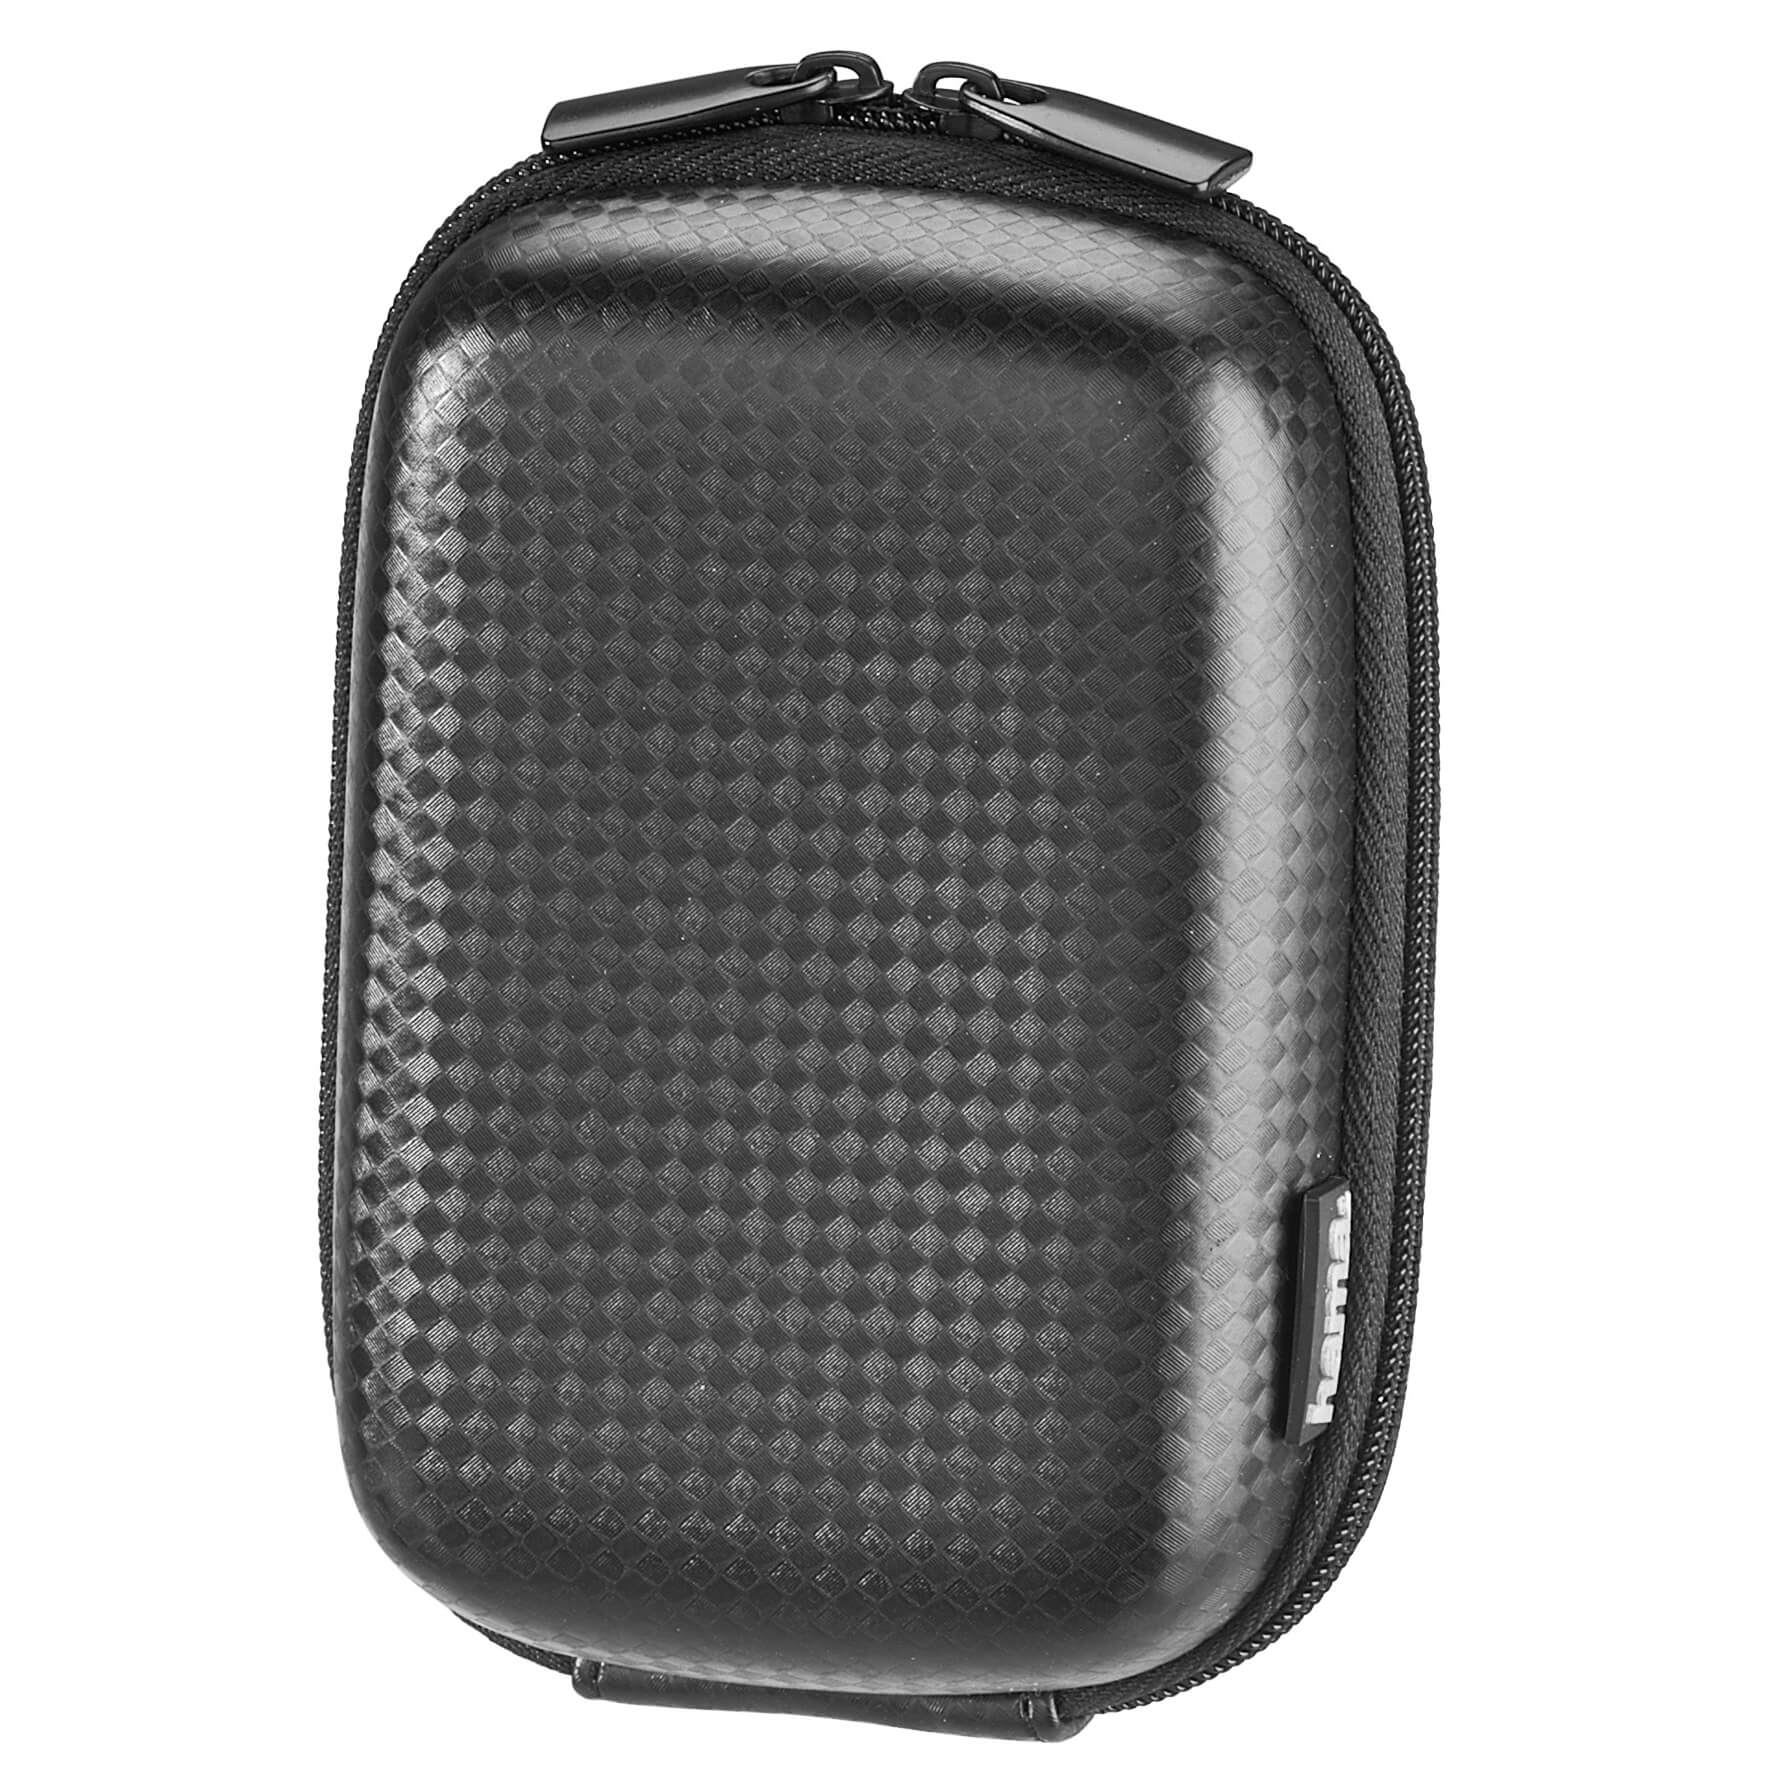 Hardcase Carbon Style Camera Bag, 60 L, black